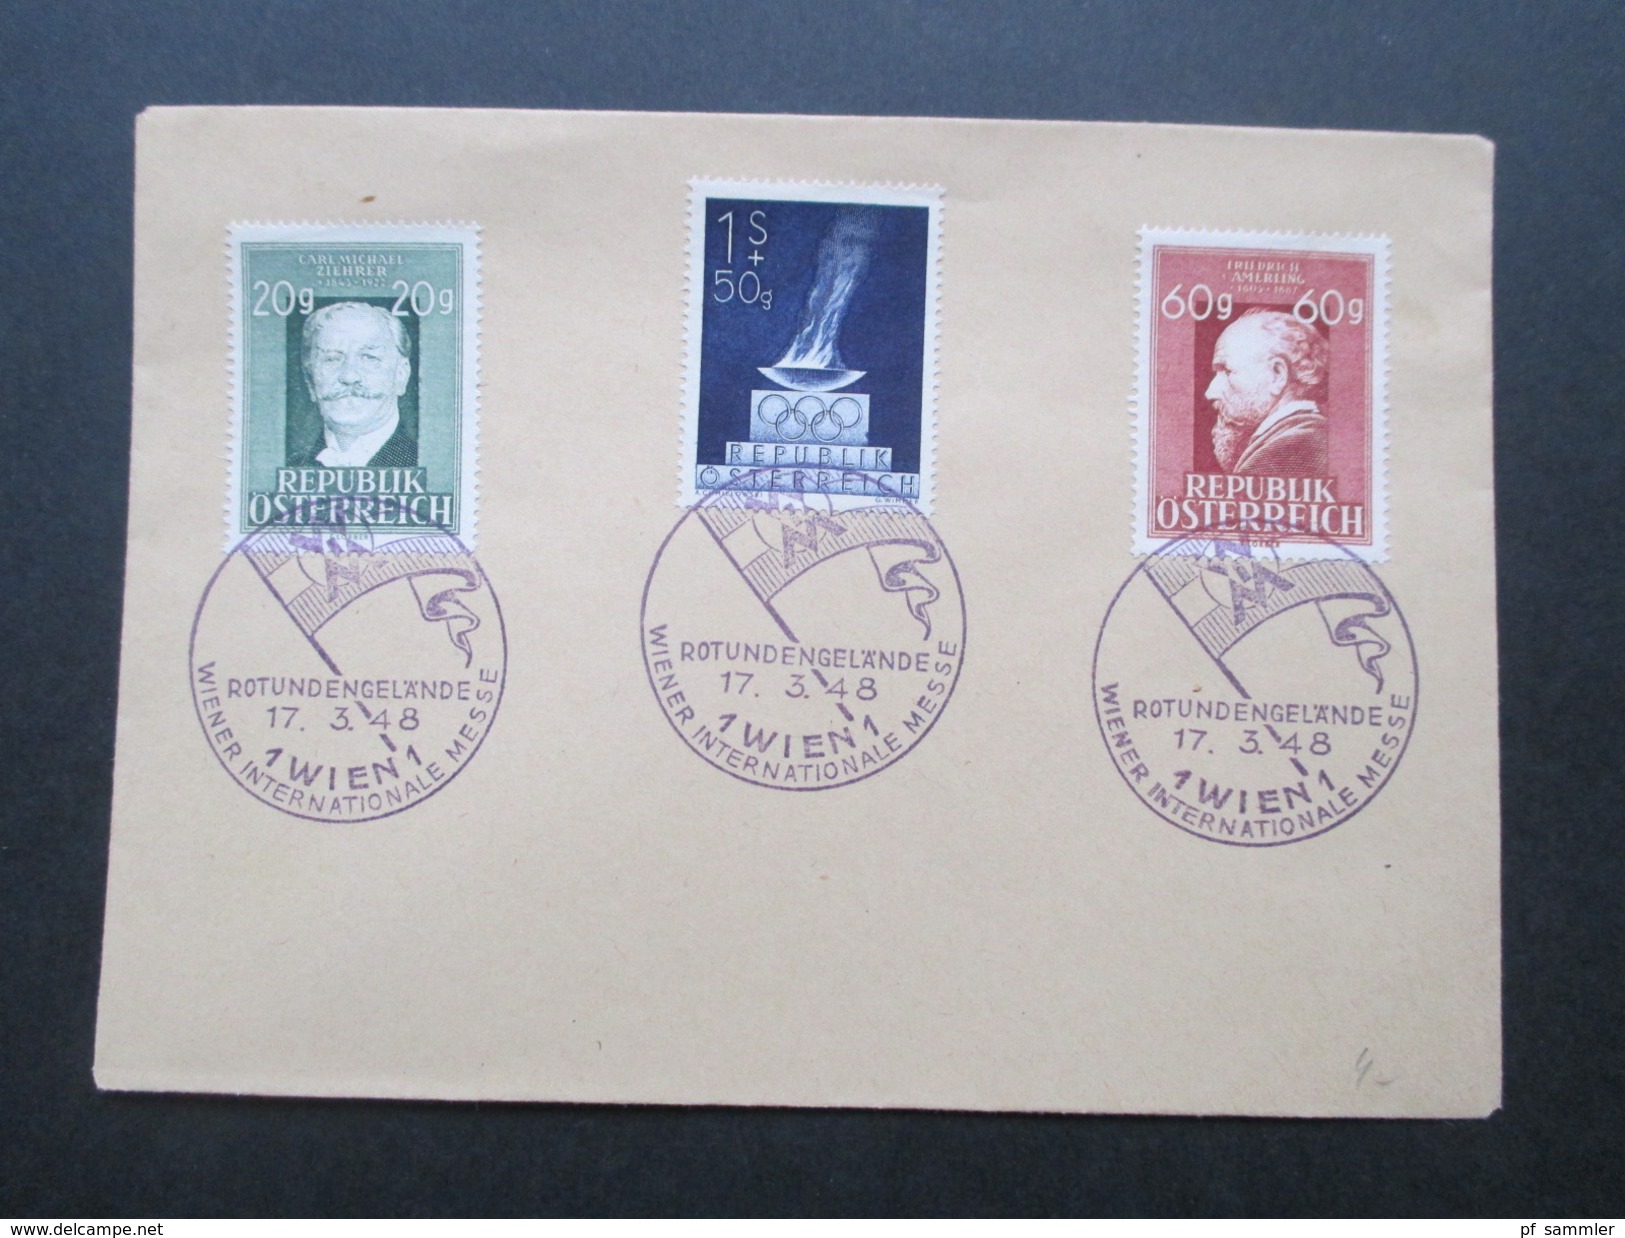 Österreich 17.3.1948 Sonderstempel Rotundengelände Wiener Internationale Messe. 2 Belege Mit Den Nr. 854, 855 Und 857 - Covers & Documents